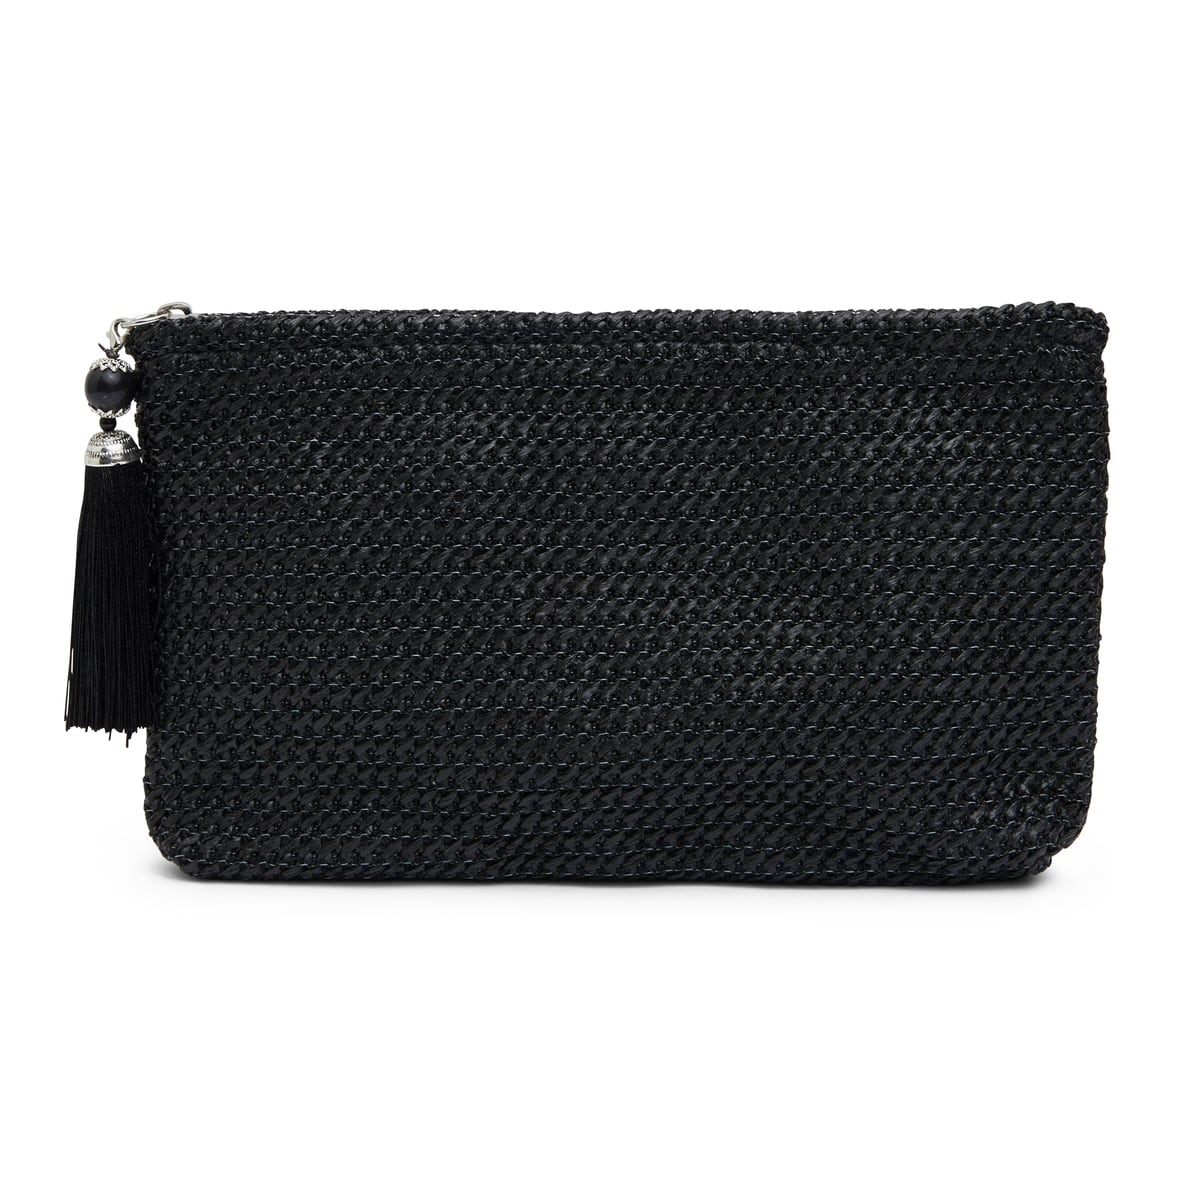 Weave Handbag in Black